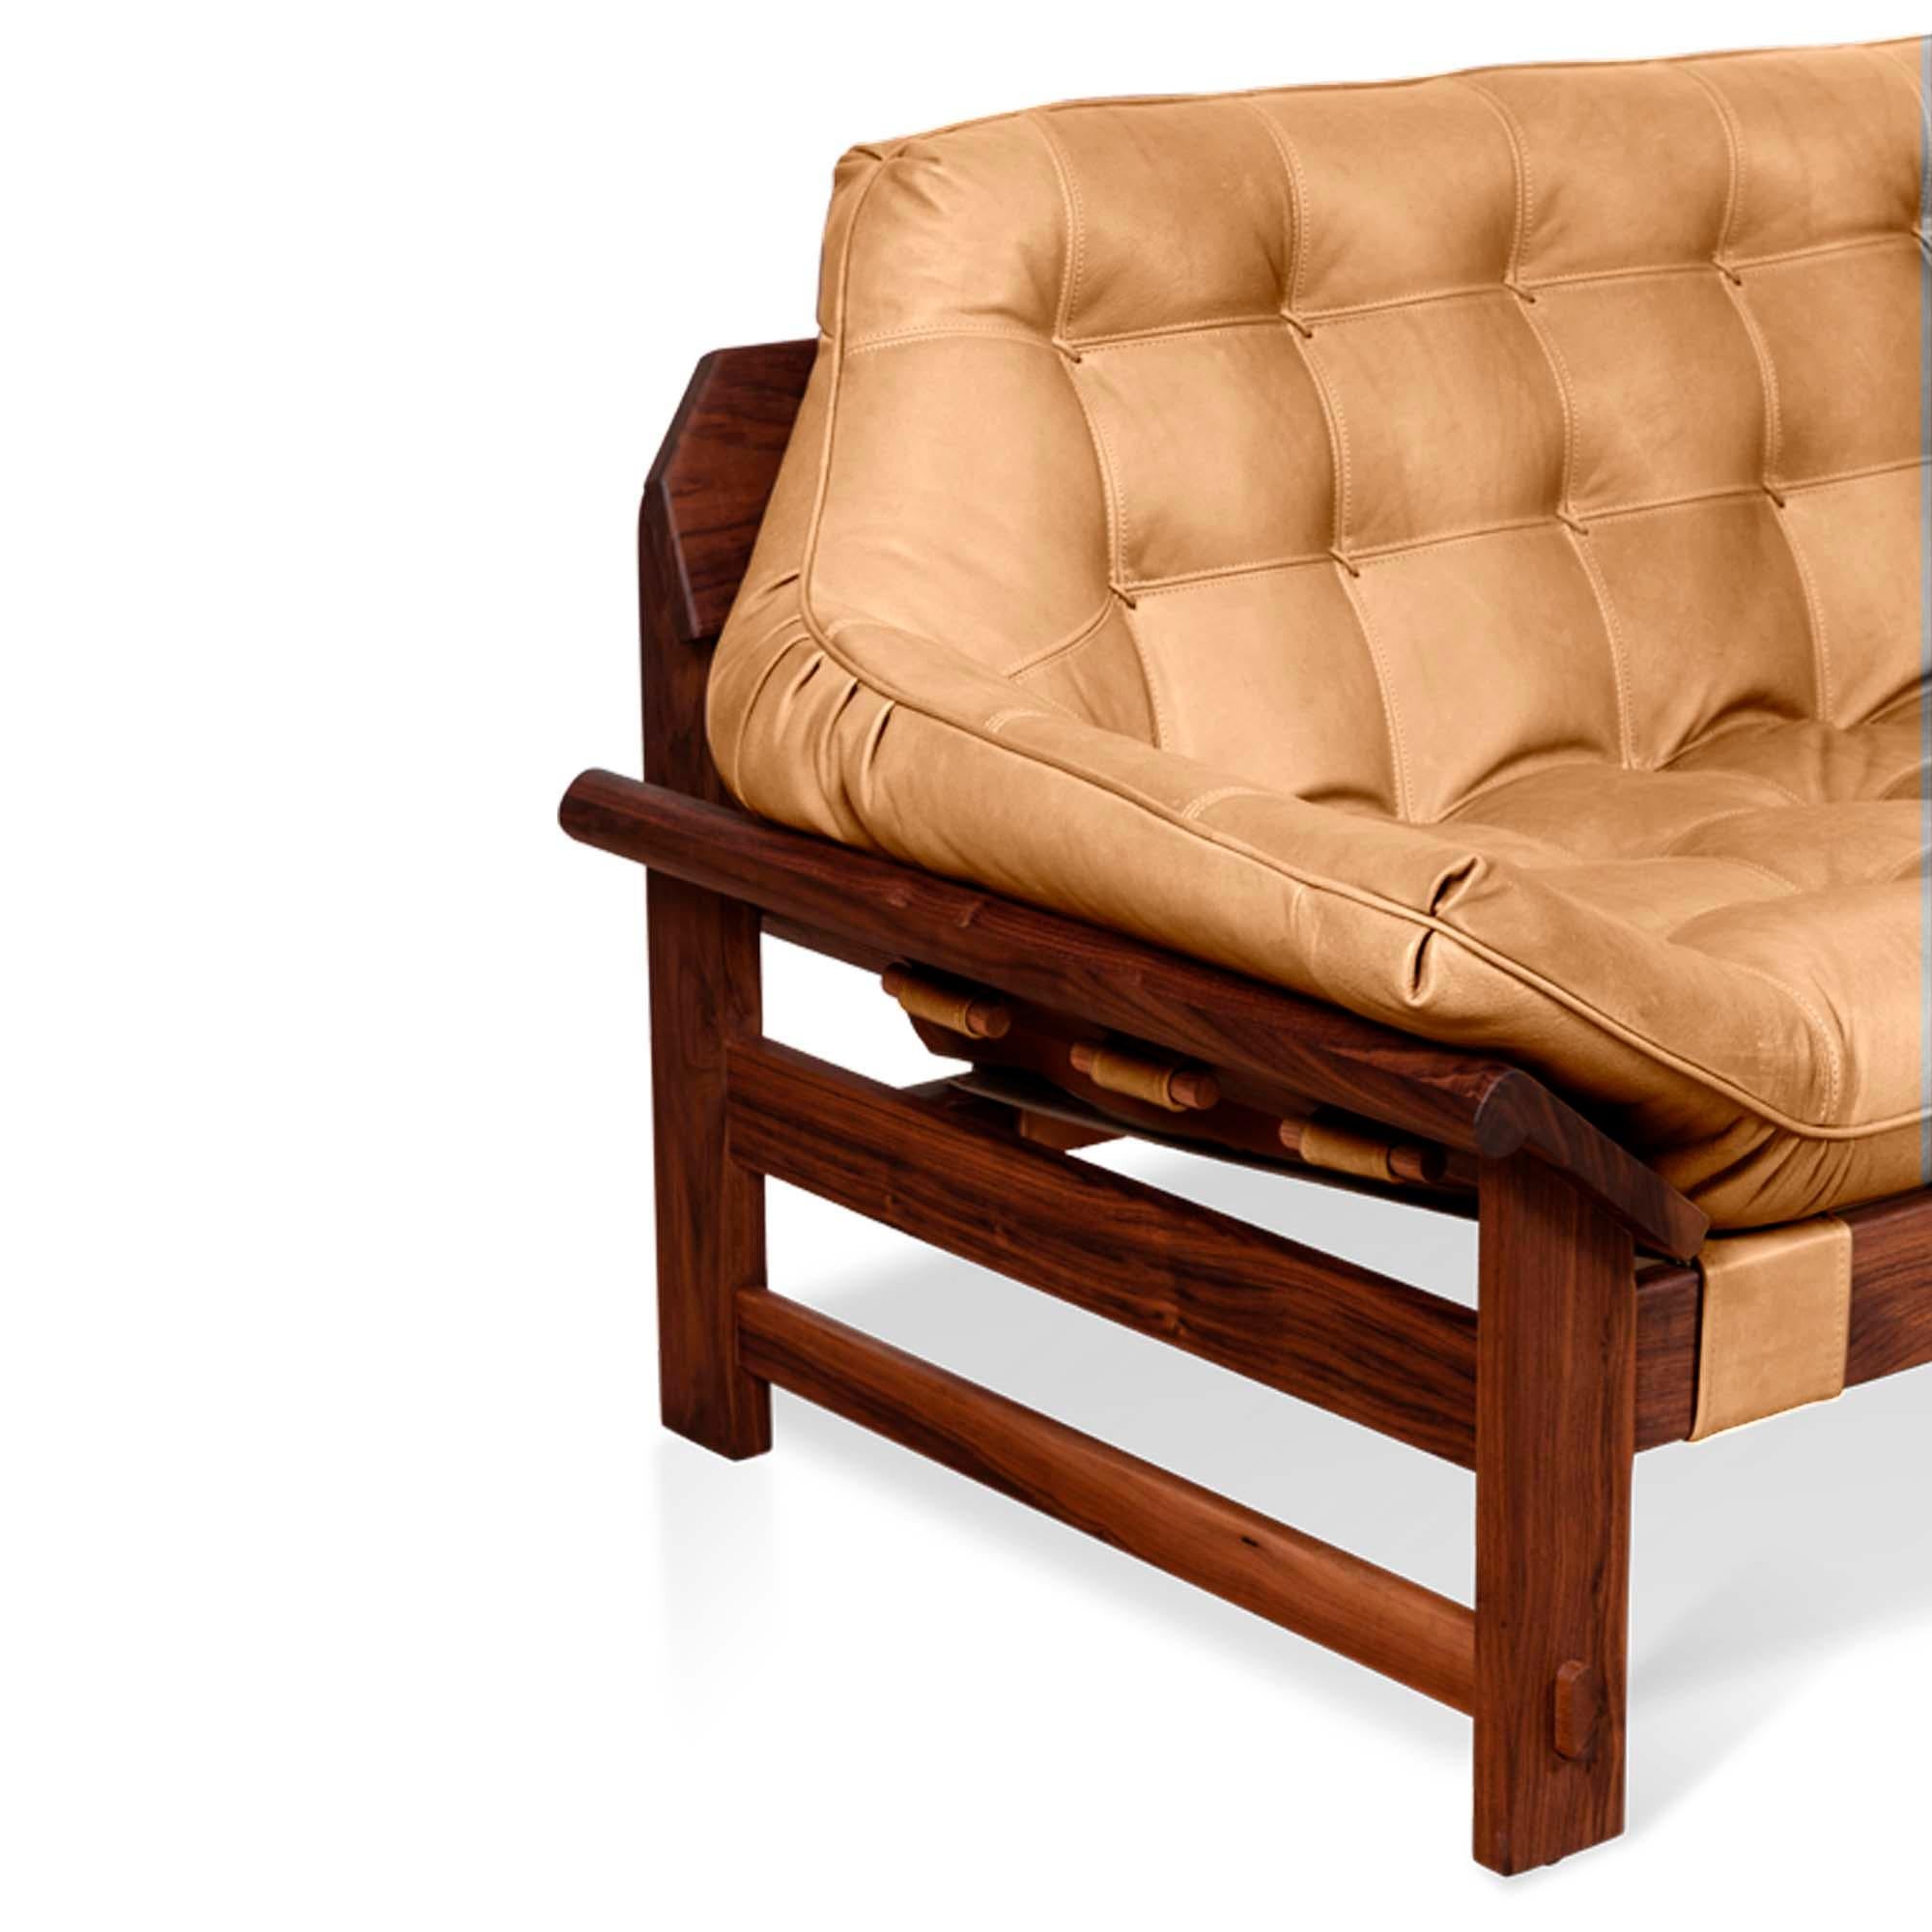 Mid-Century Modern Tan Leather and Walnut Ojai Sofa by Lawson-Fenning